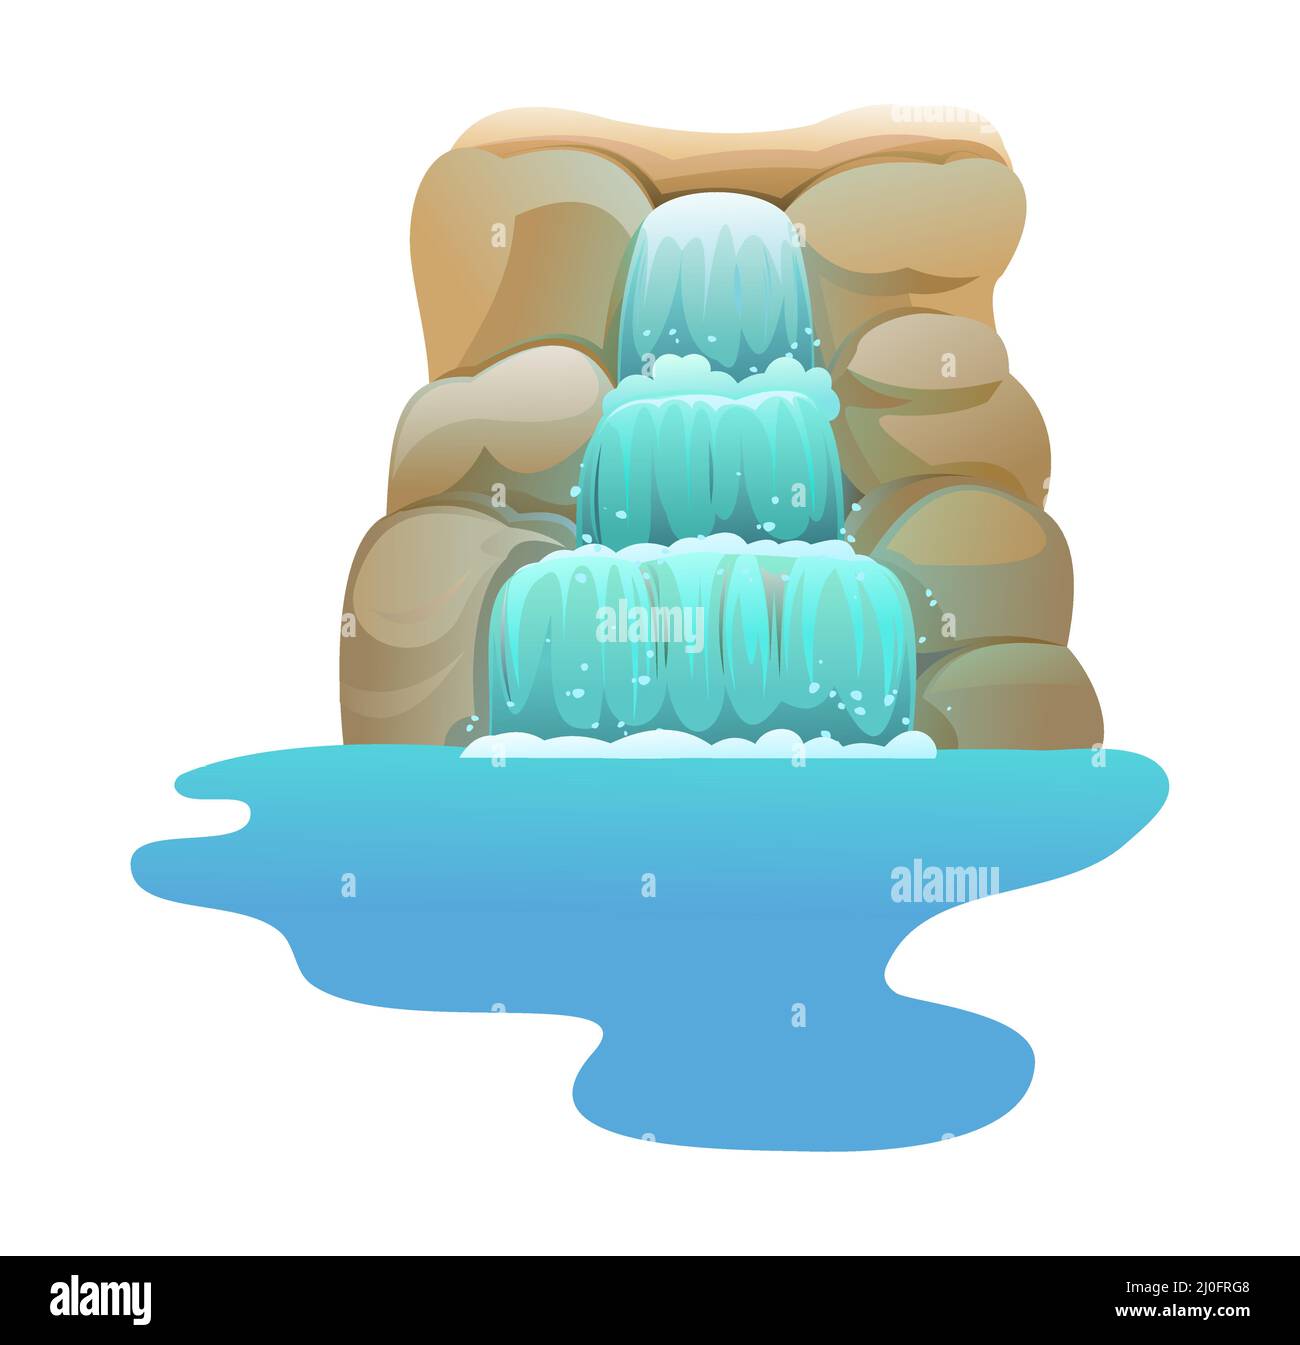 Wasserfall zwischen Felsen. Triple Cascade schimmert nach unten. Fließendes Wasser. Cooler Cartoon-Style. Objekt auf weißem Hintergrund isoliert. Vektor. Stock Vektor